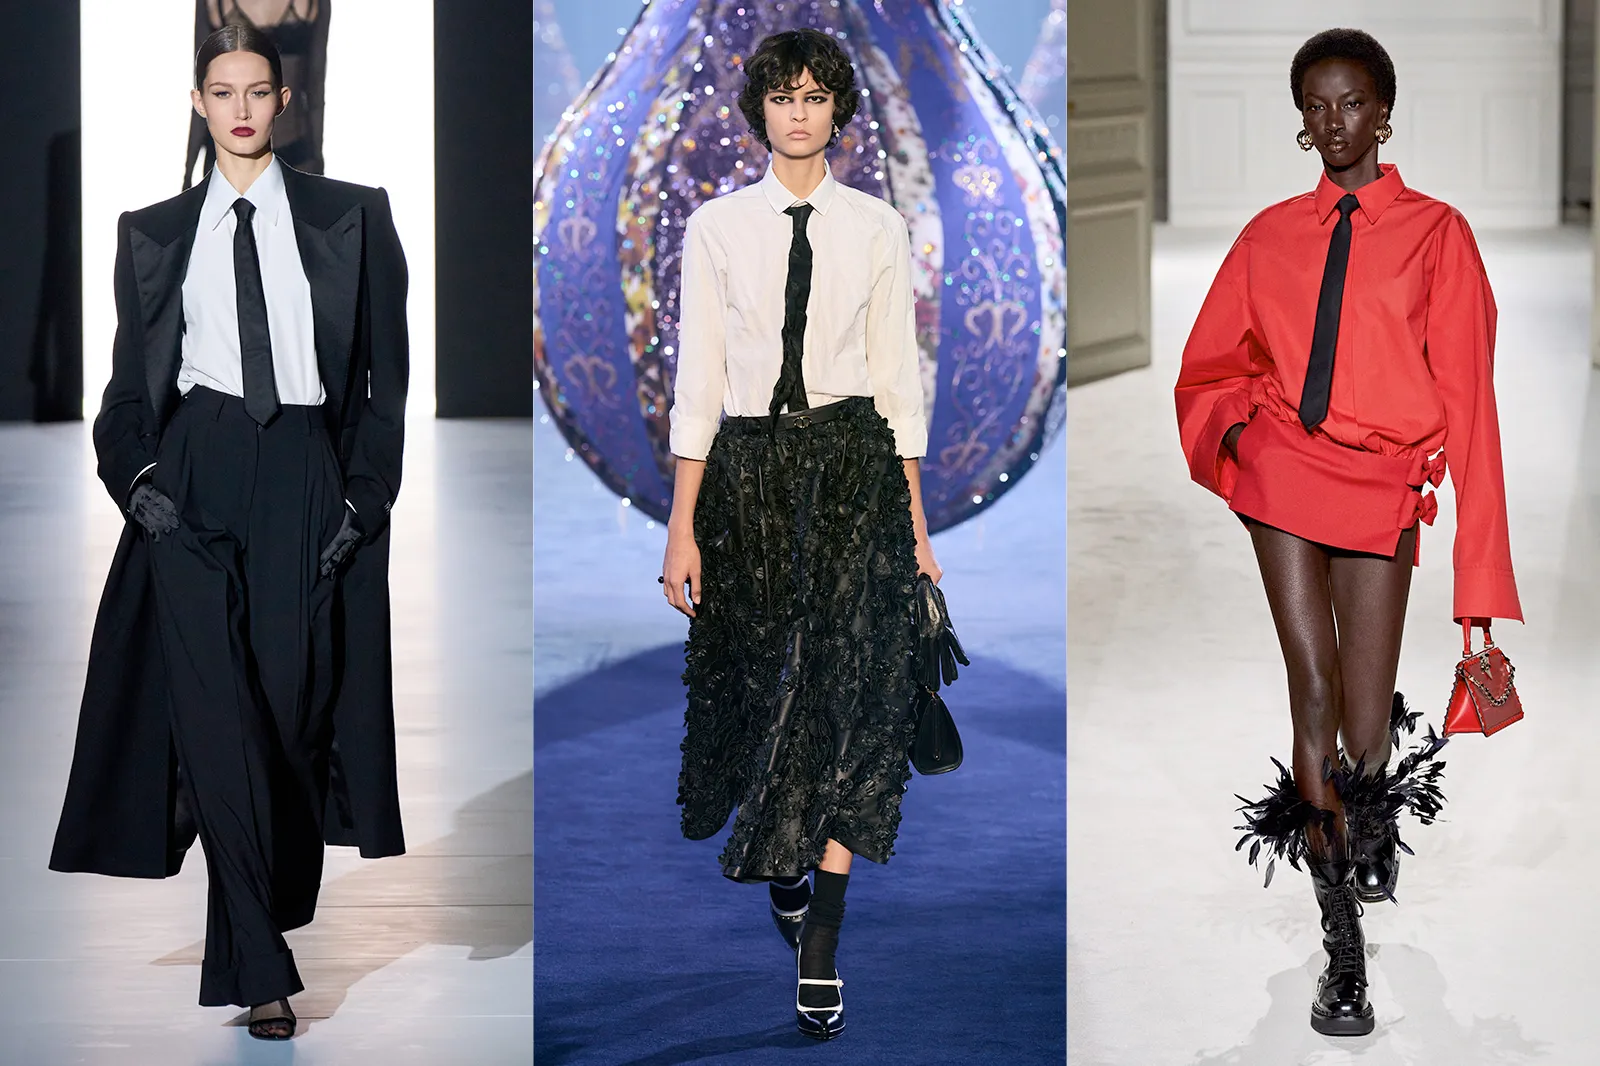 Nữ giới thắt cà vạt: Dolce & Gabbana, Dior, Valentino là những thương hiệu thời trang nổi tiếng tung ra mốt phụ nữ đeo cà vạt. Bắt nguồn từ phong trào nữ quyền, xu hướng này ngày càng lan rộng và được đông đảo tín đồ yêu thích. Trào lưu đeo cà vạt mang đến vẻ ngoài vừa phóng khoáng hiện đại, vừa pha nét quyến rũ kiêu hãnh chính là thông điệp mà các nhà mốt muốn truyền tải qua xu hướng này. ​